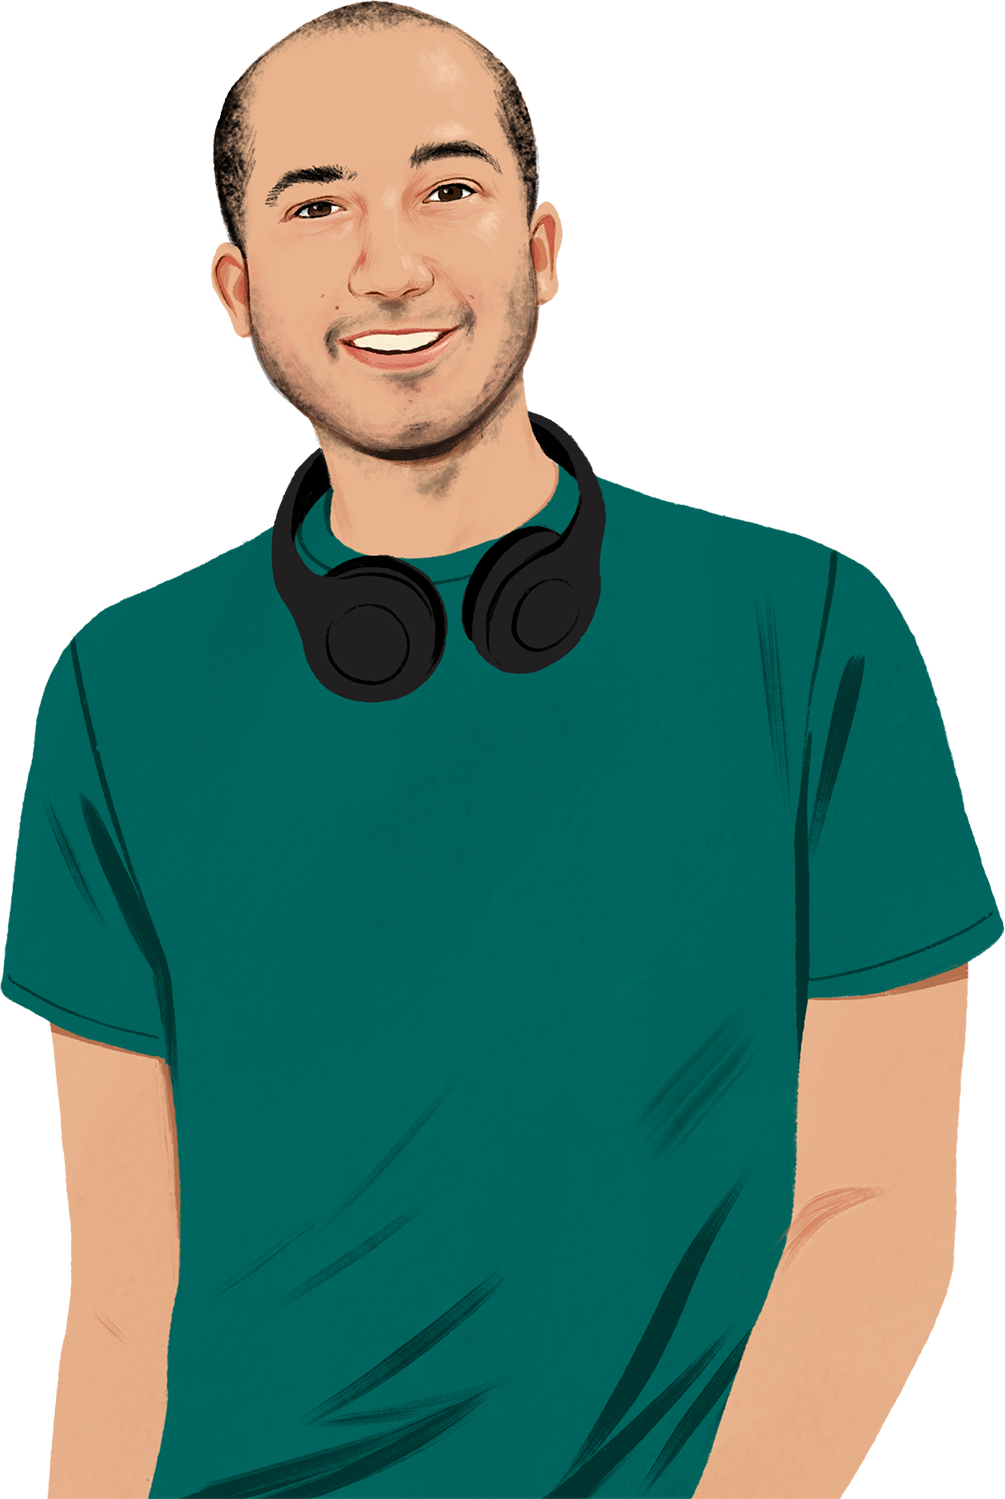 Ilustrovaný portrét usmívajícího se Chrise. Kolem krku má sluchátka a dívá se na čtenáře. Do záběru se nasune ilustrovaný iPhone, ze kterého se linou kreslené zvukové vlny.